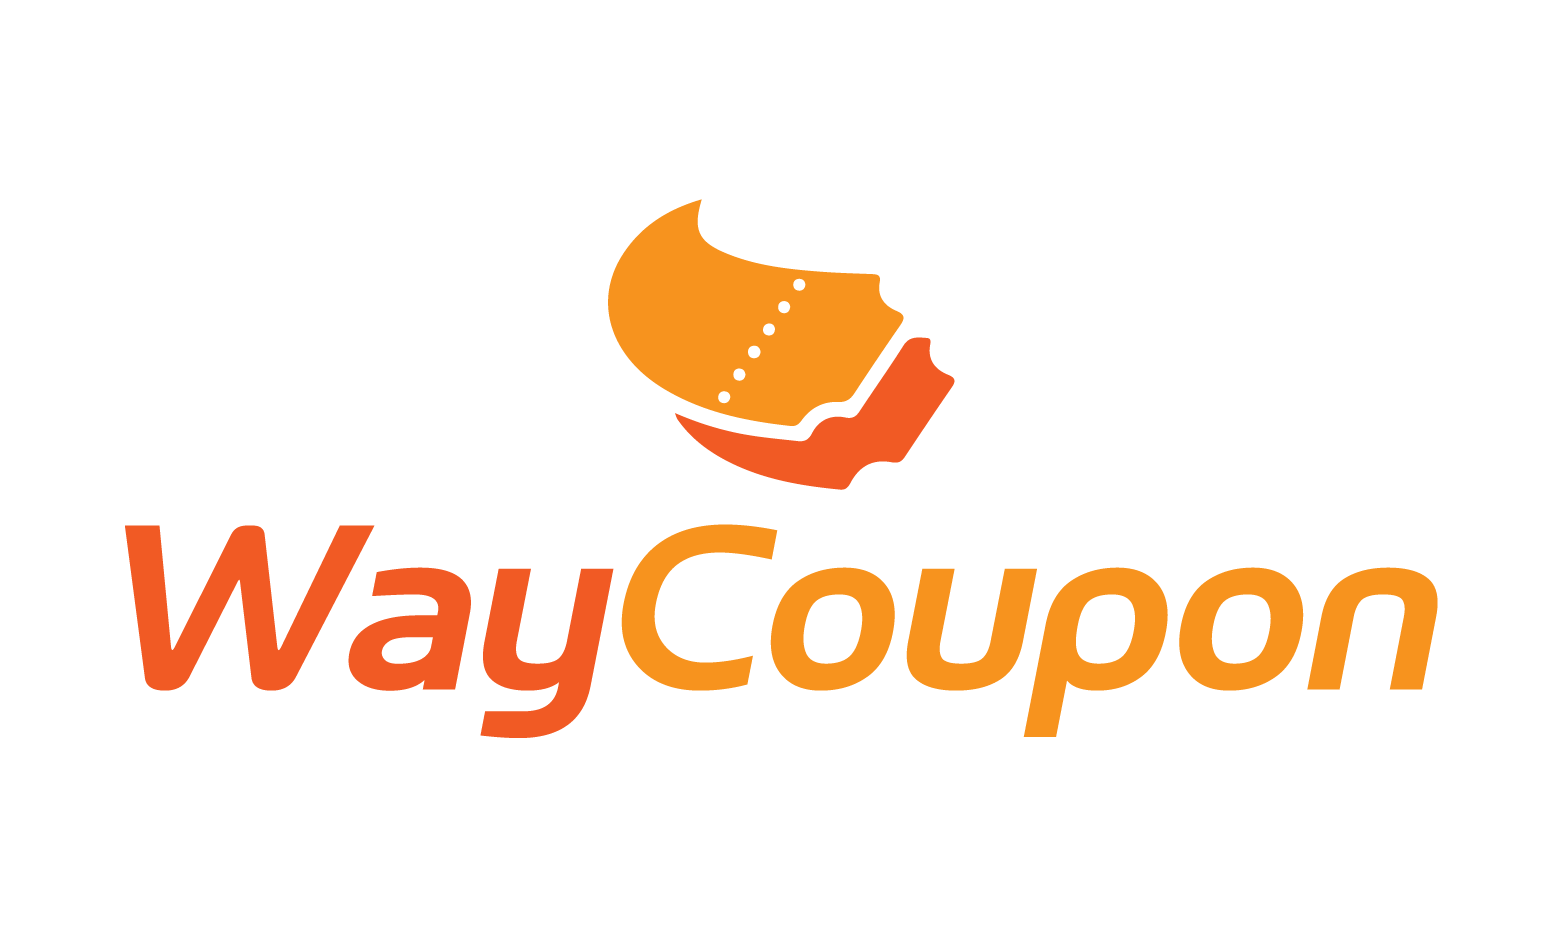 WayCoupon.com - Creative brandable domain for sale